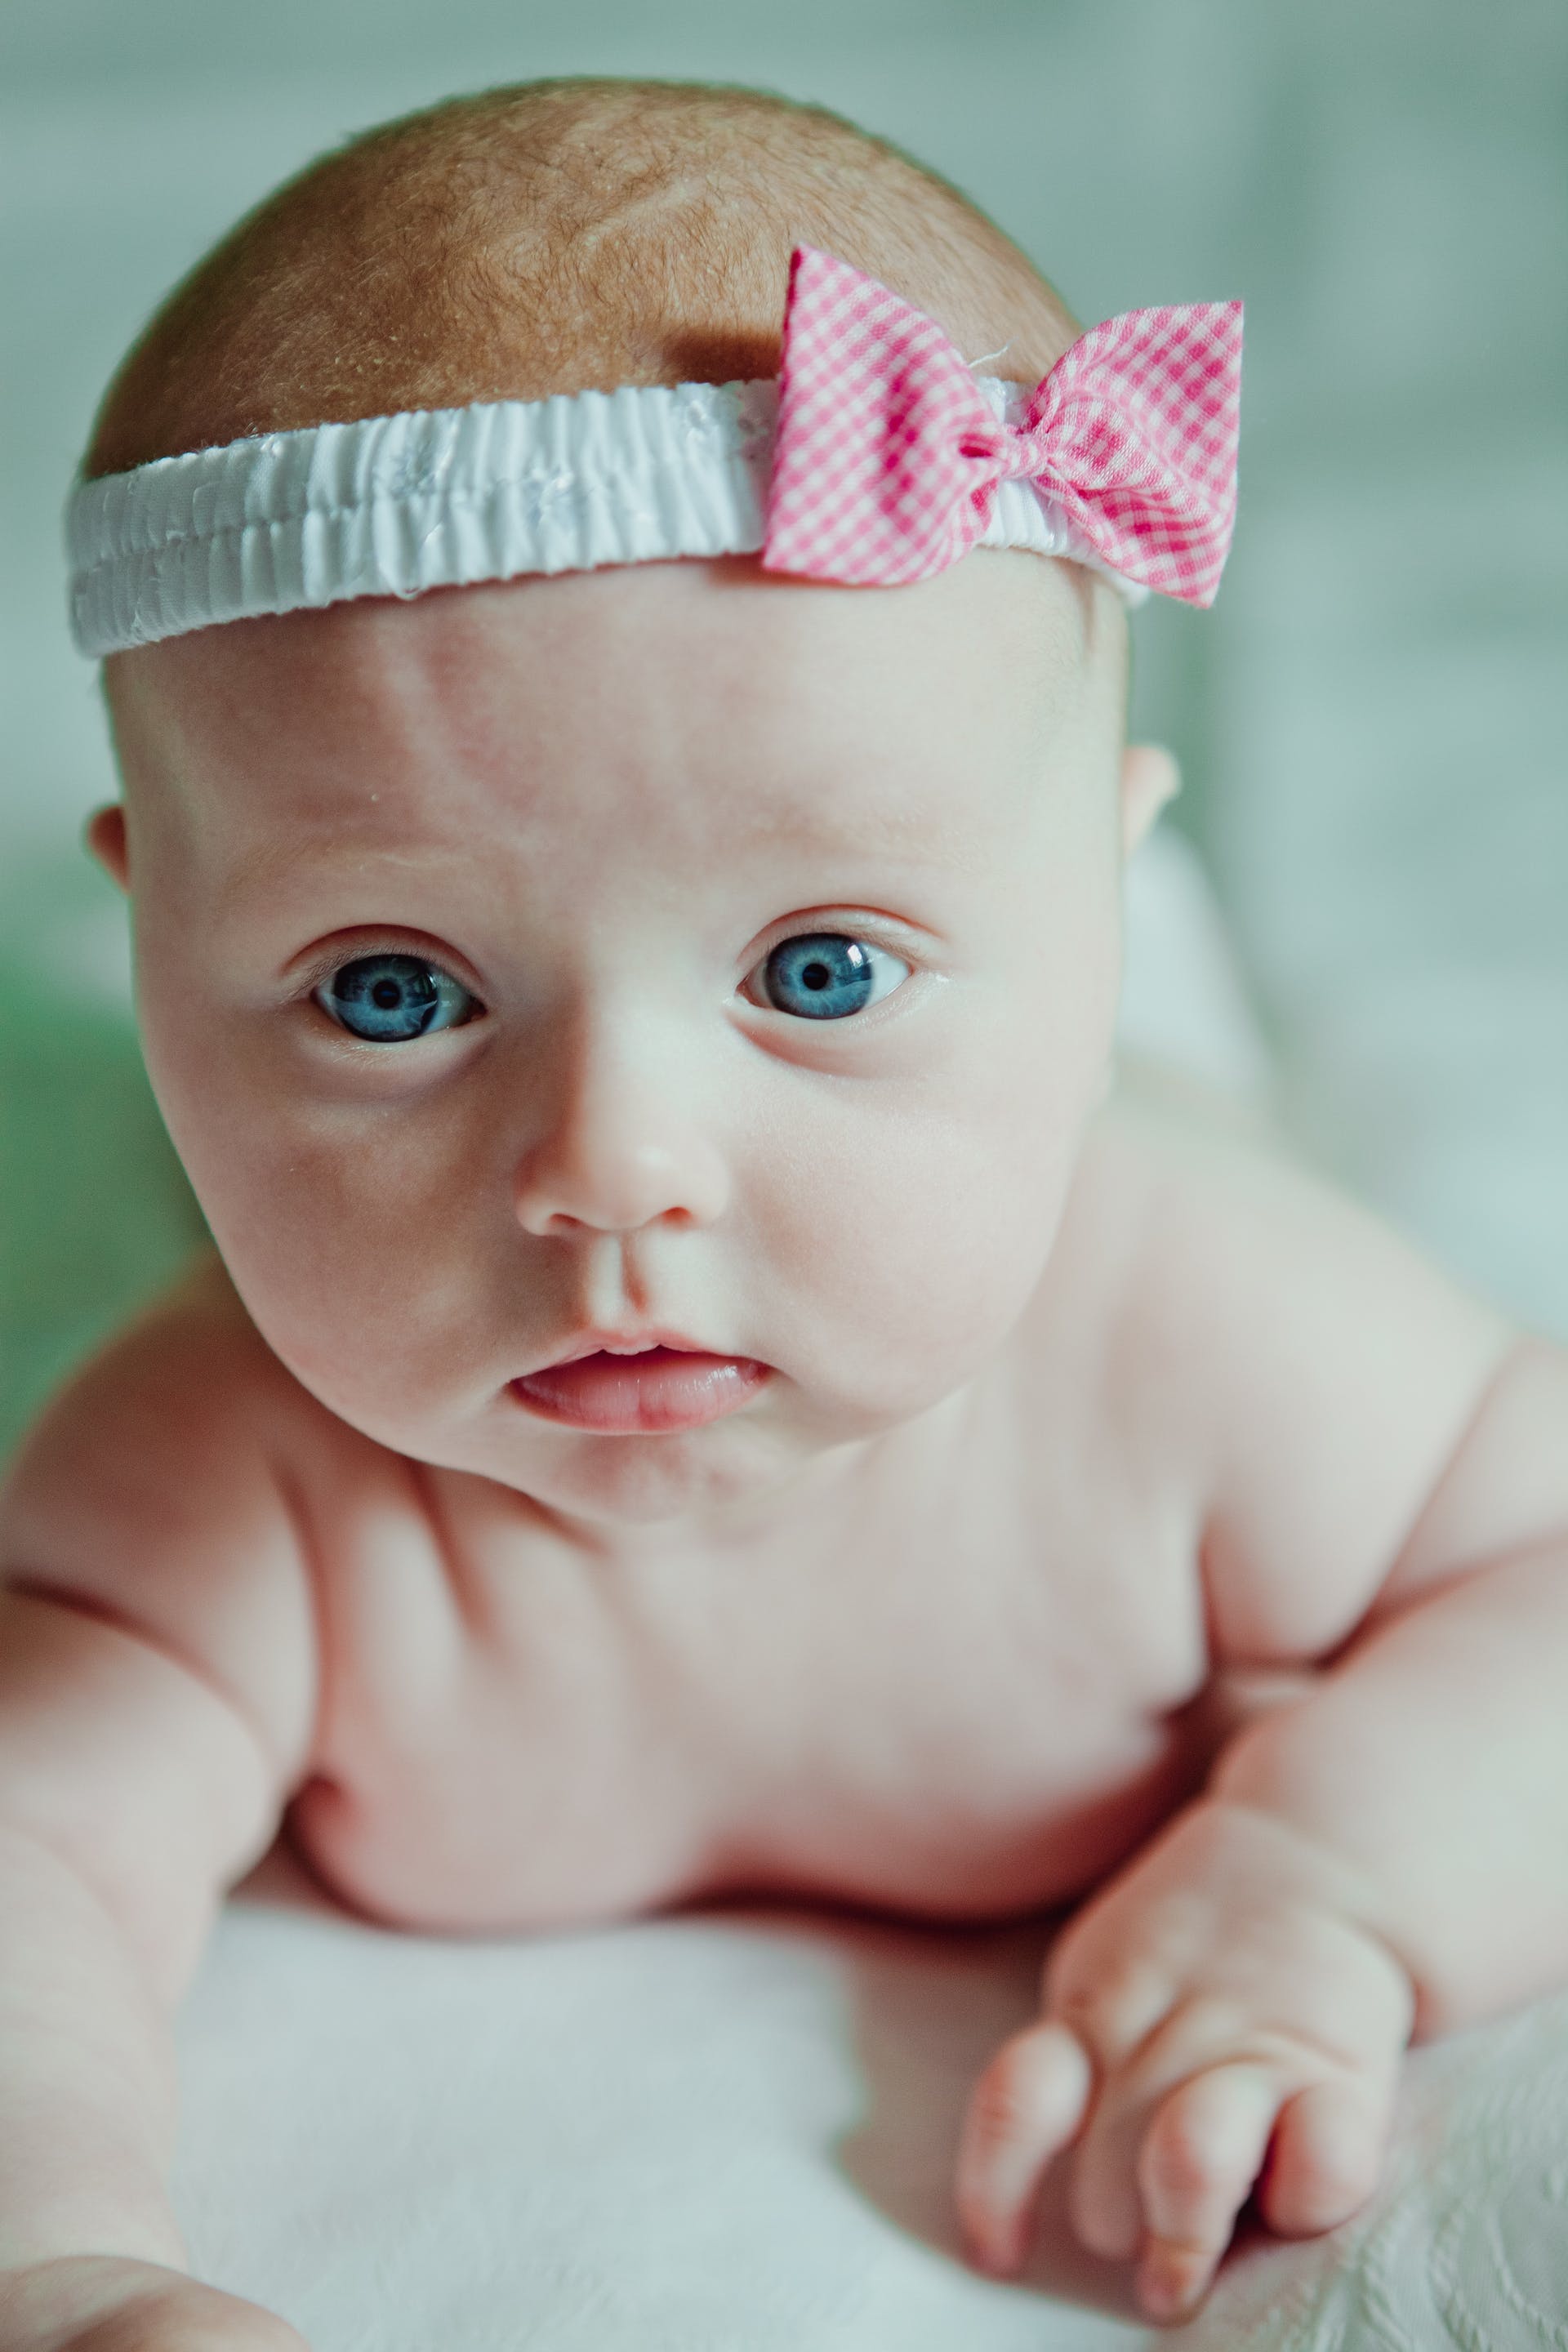 Eine Nahaufnahme eines Neugeborenen mit einem Stirnband | Quelle: Pexels